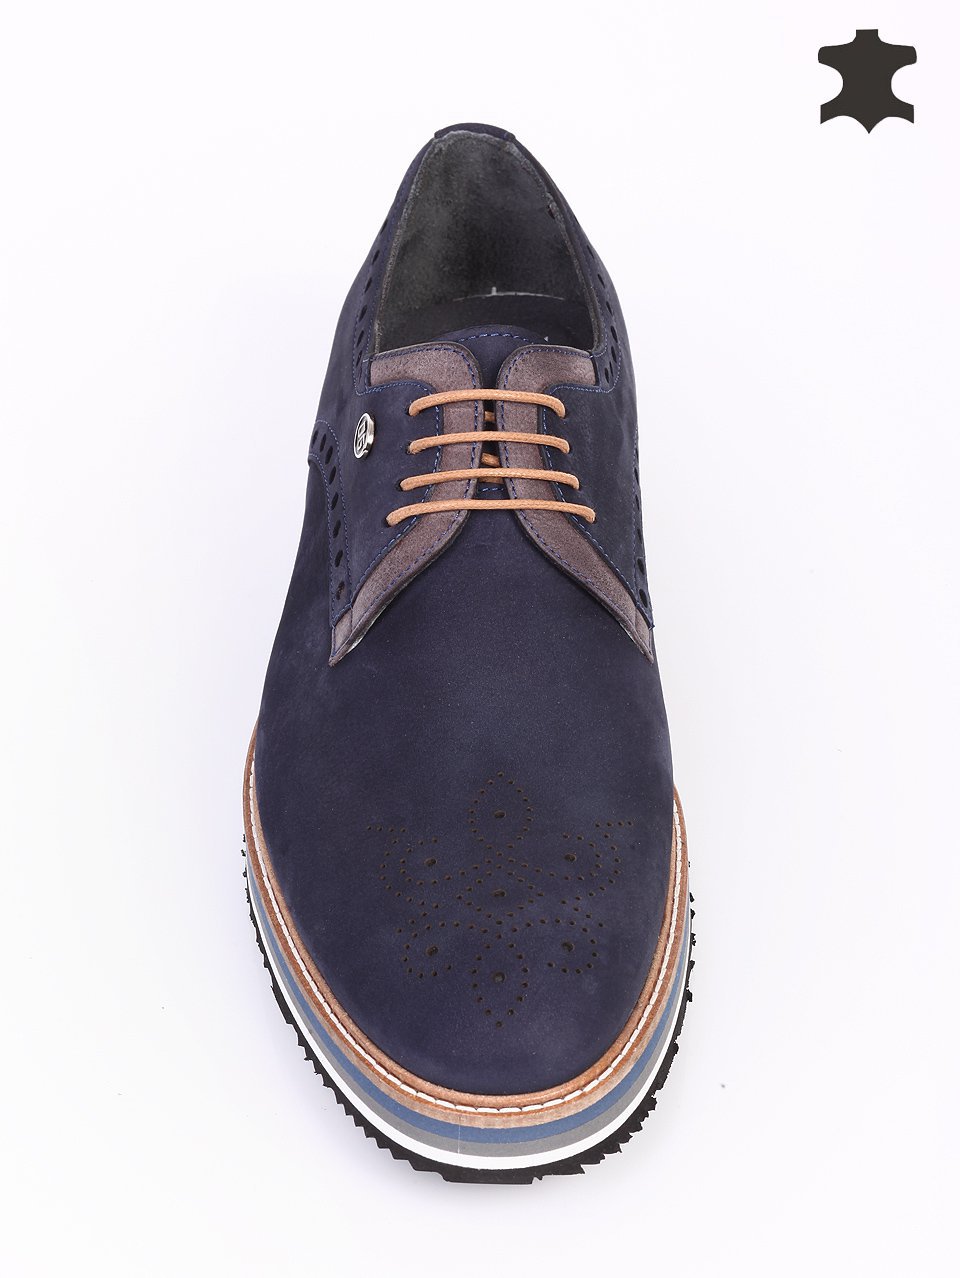 Мъжки обувки от естествен набук в синьо 7AT-16341 navy